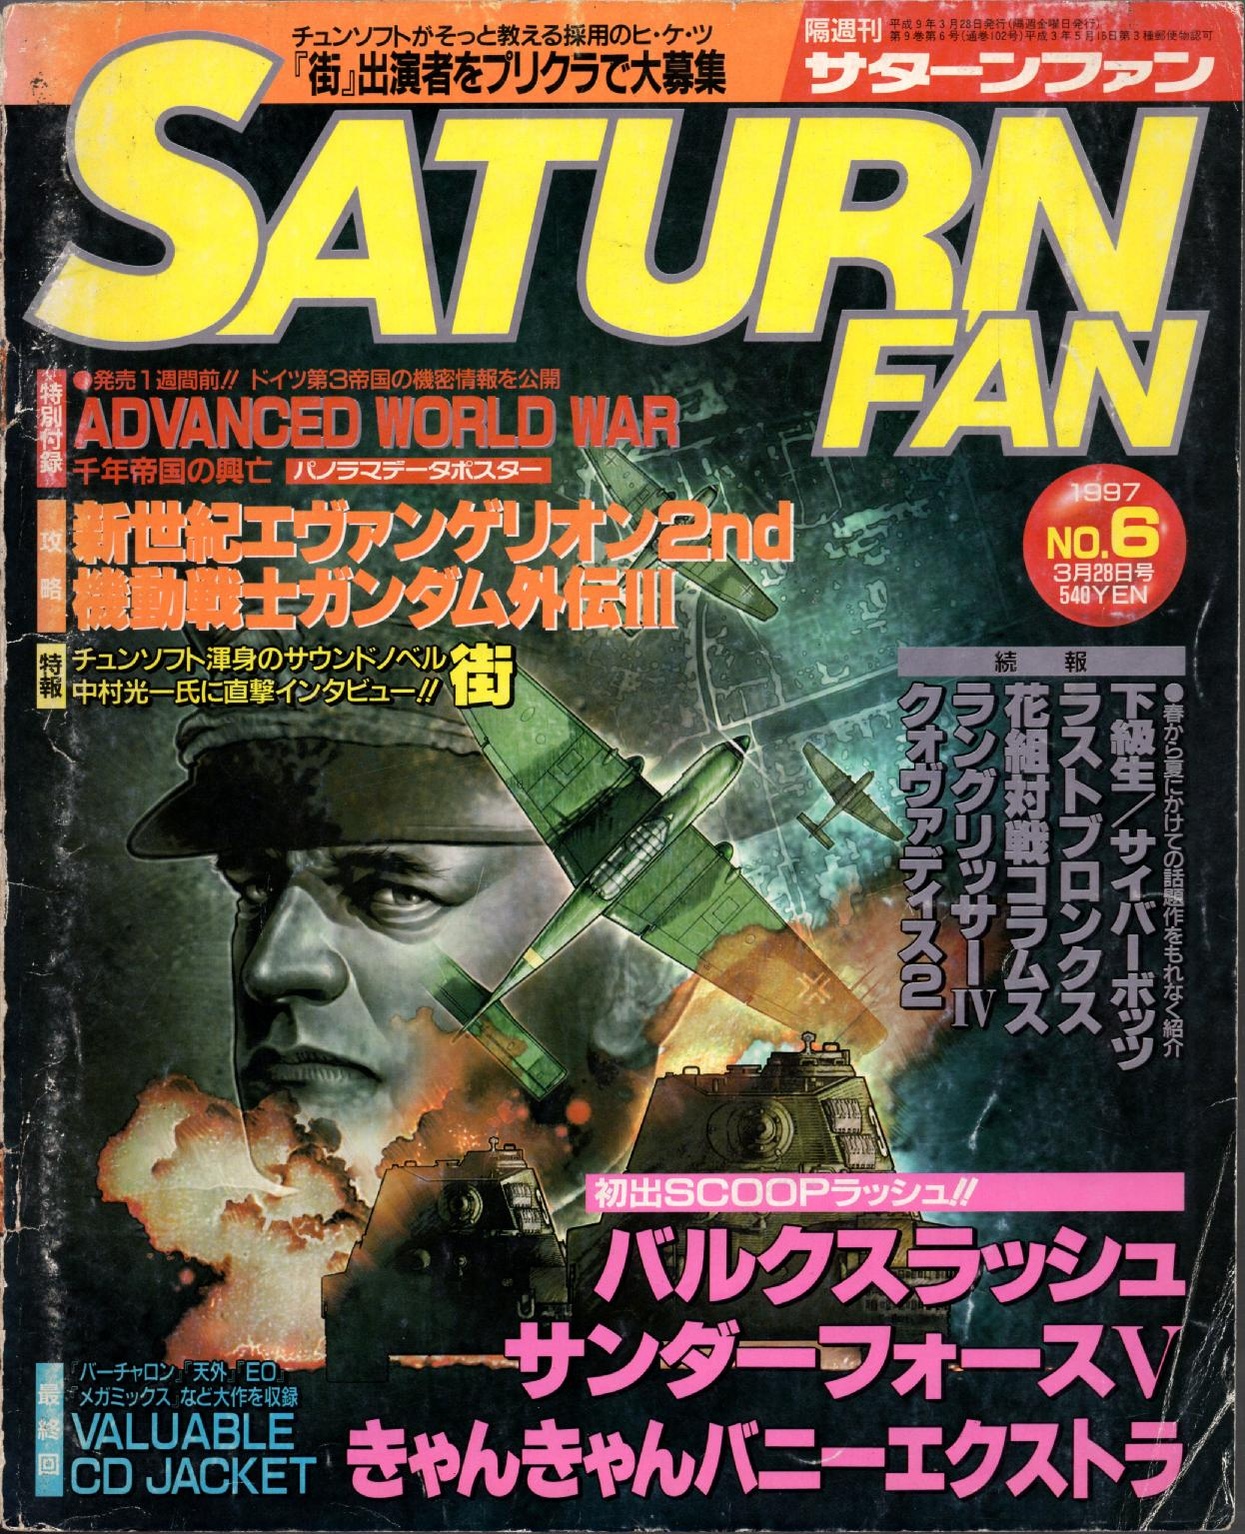 SaturnFan JP 1997-06 19970328.pdf